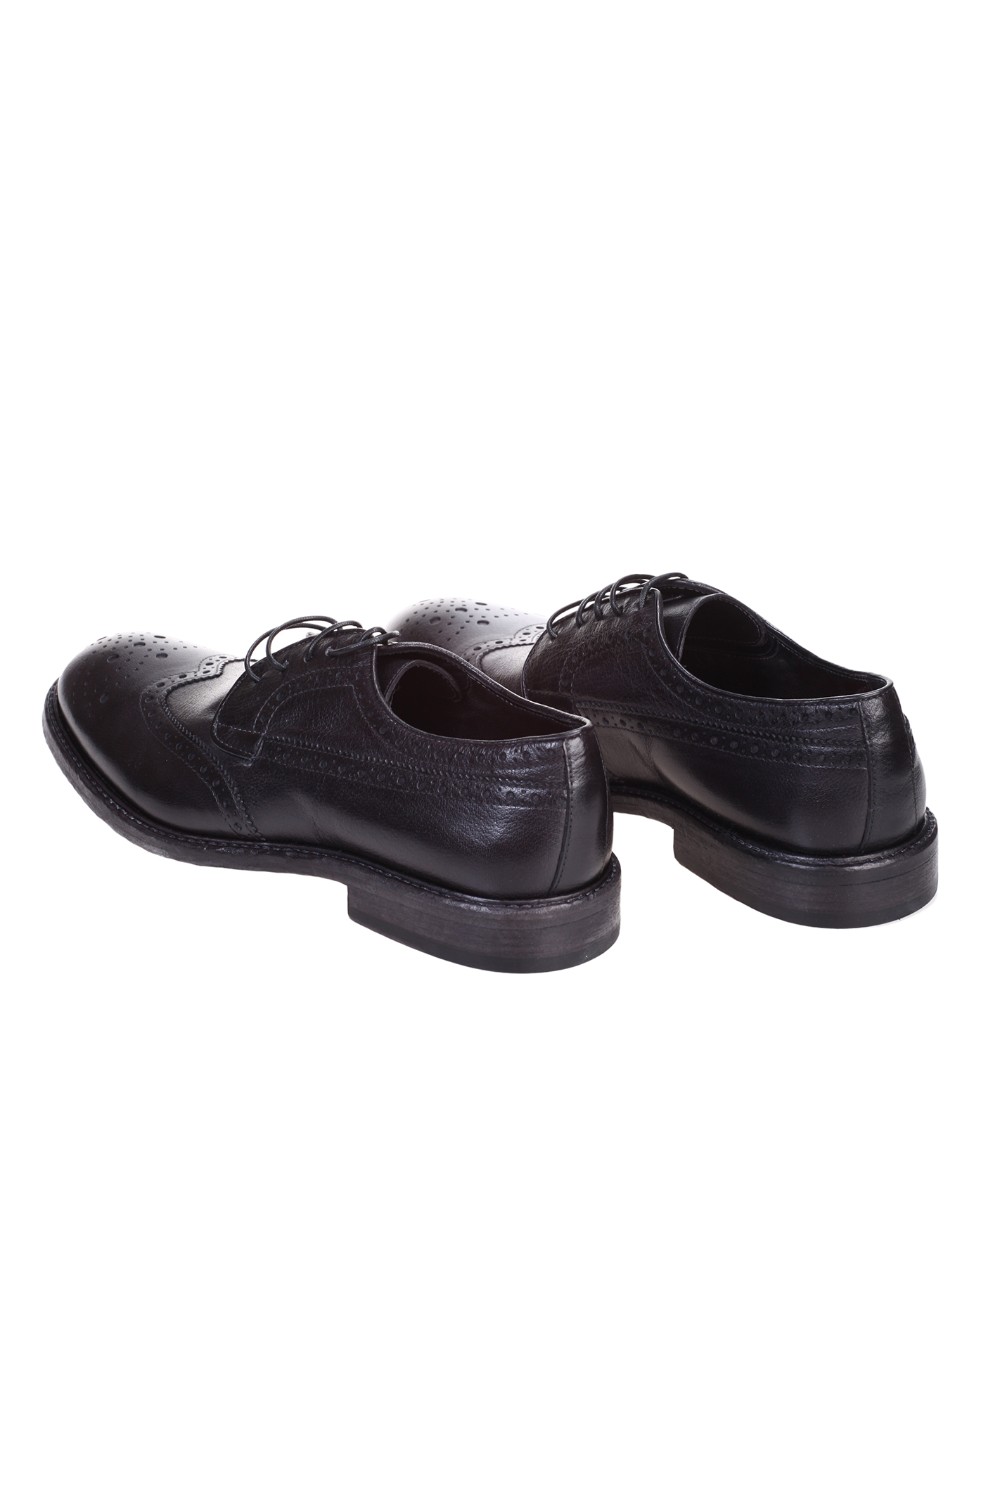 shop CORVARI  Scarpe: Corvari scarpe in pelle di colore nero.
Realizzate a mano.
Lavorazione stile inglese.
Suola in cuoio.
Stringata.
Composizione: 100% pelle.
Made in Italy.. 9591-MIELE NERO number 9121102